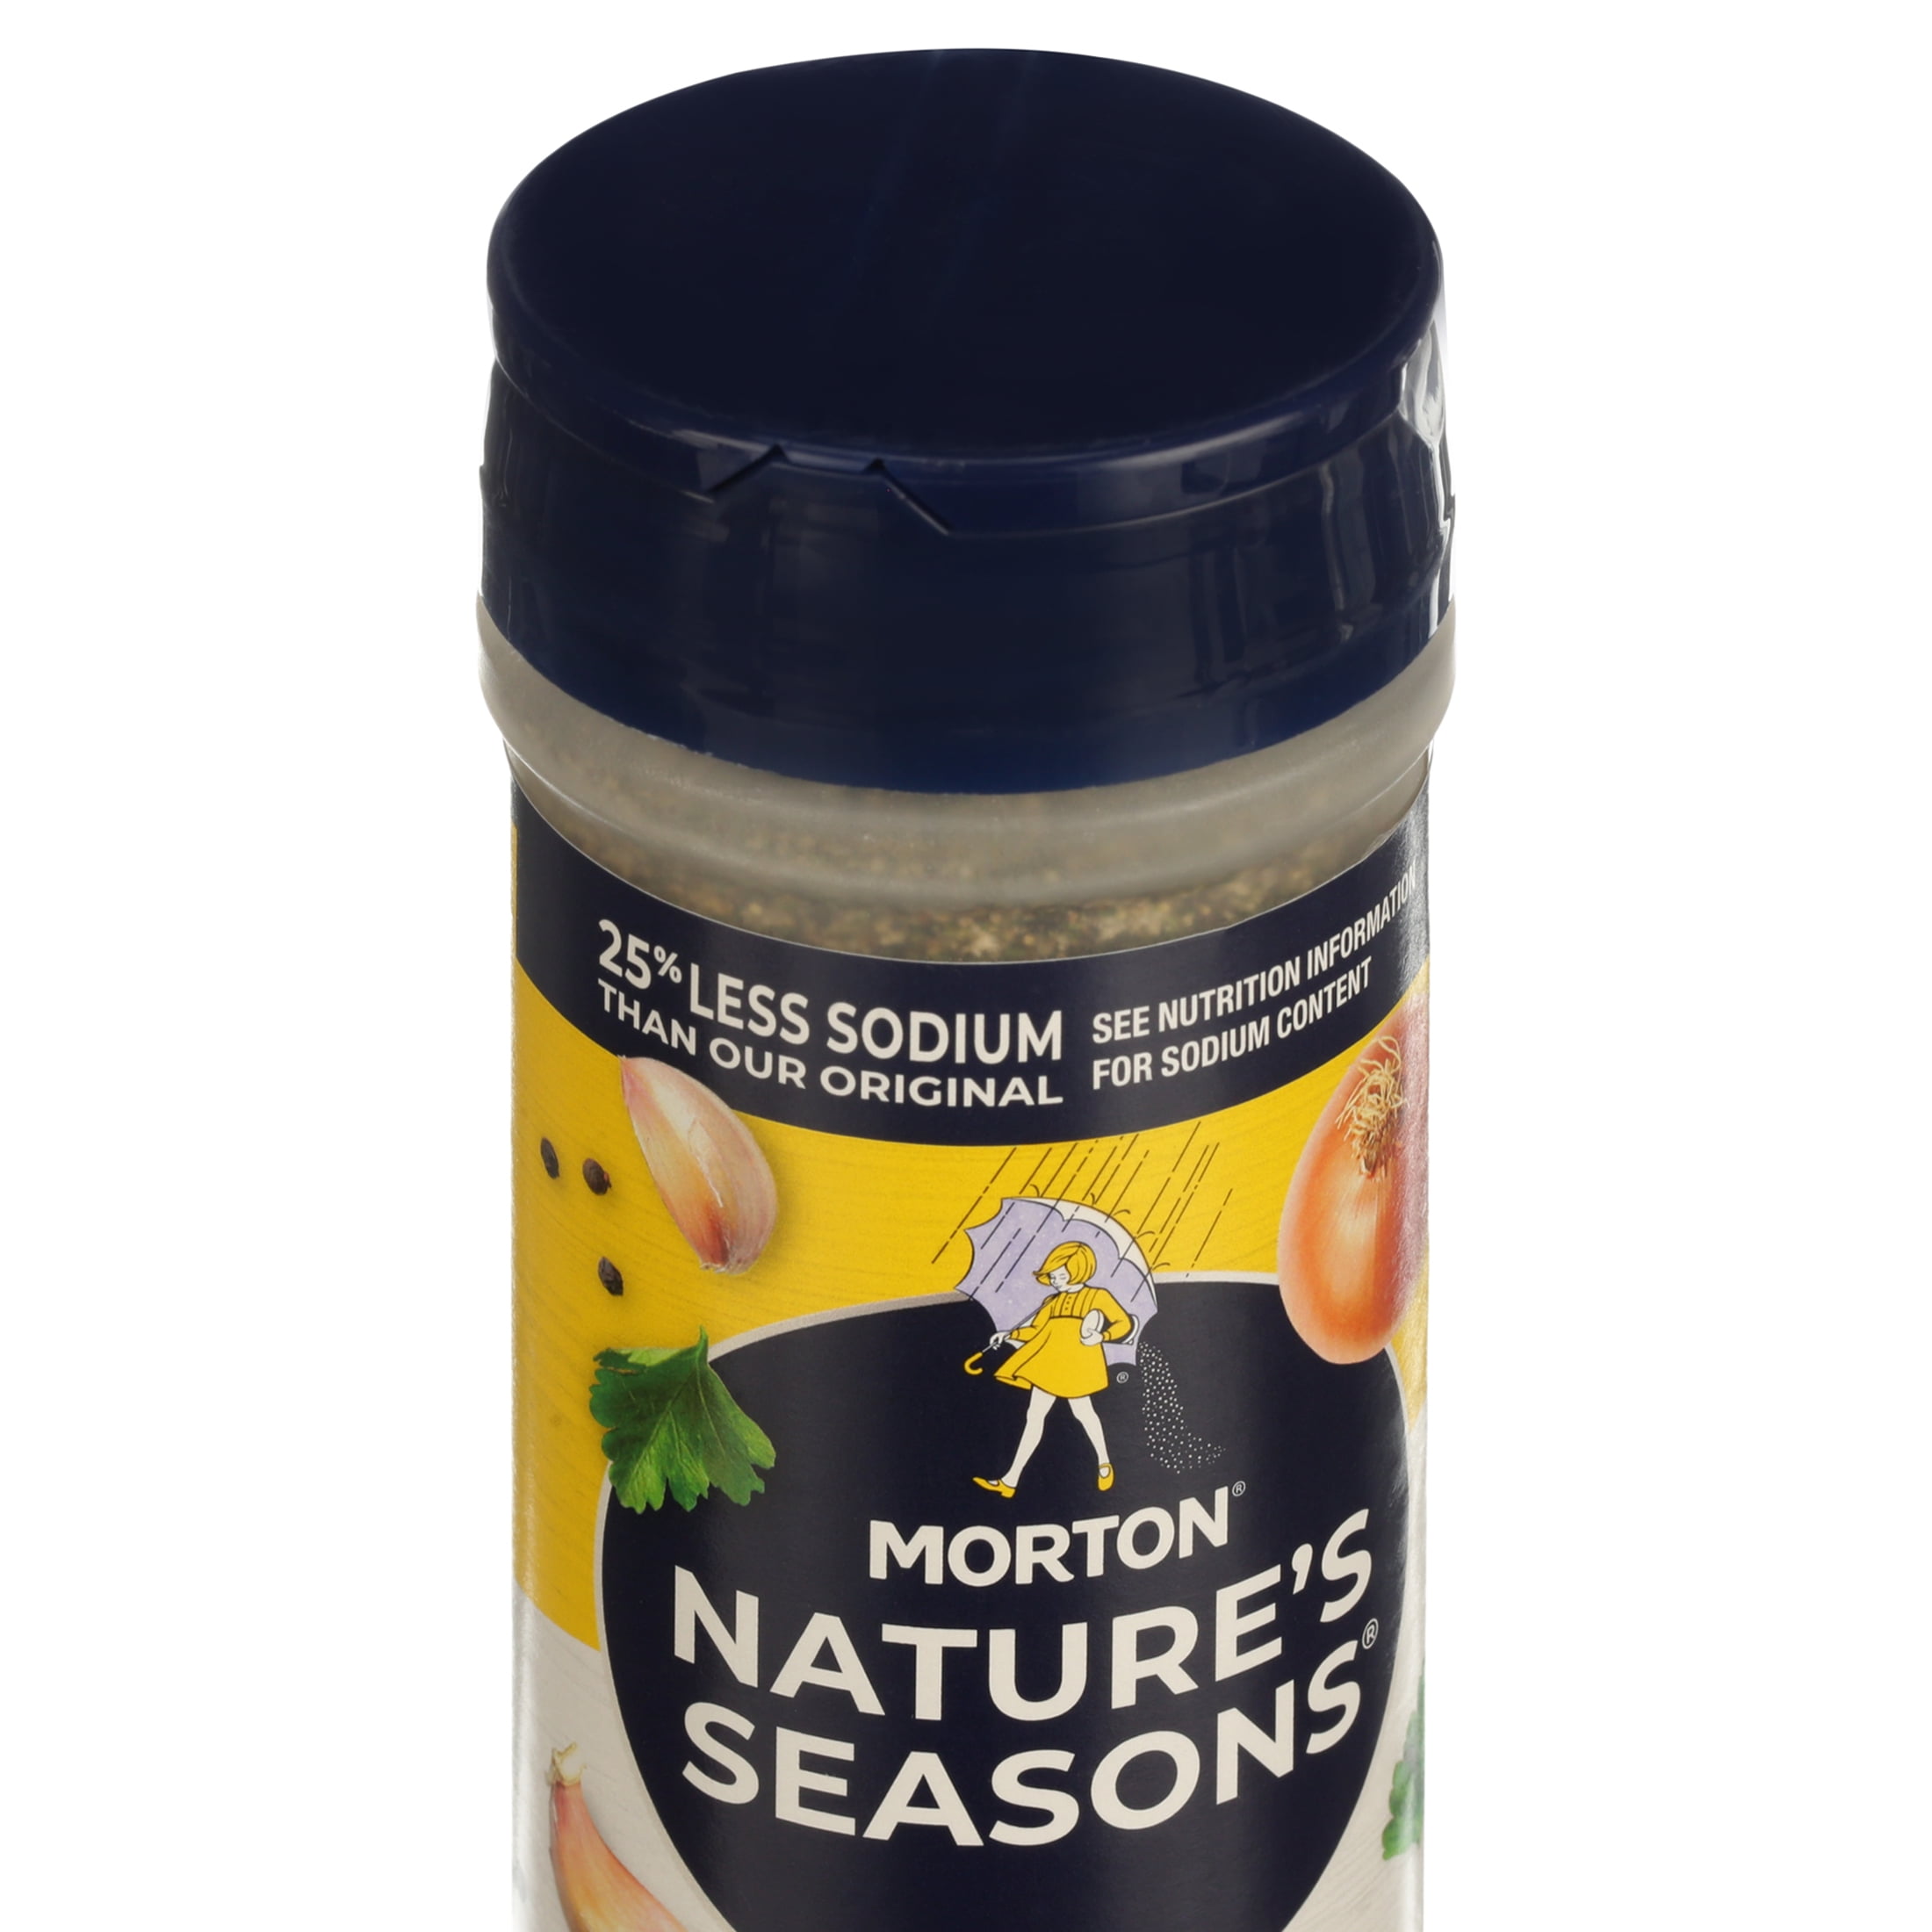 Morton Salt Nature's Seasons Seasoning Blend, 25% Less Sodium, 7.5